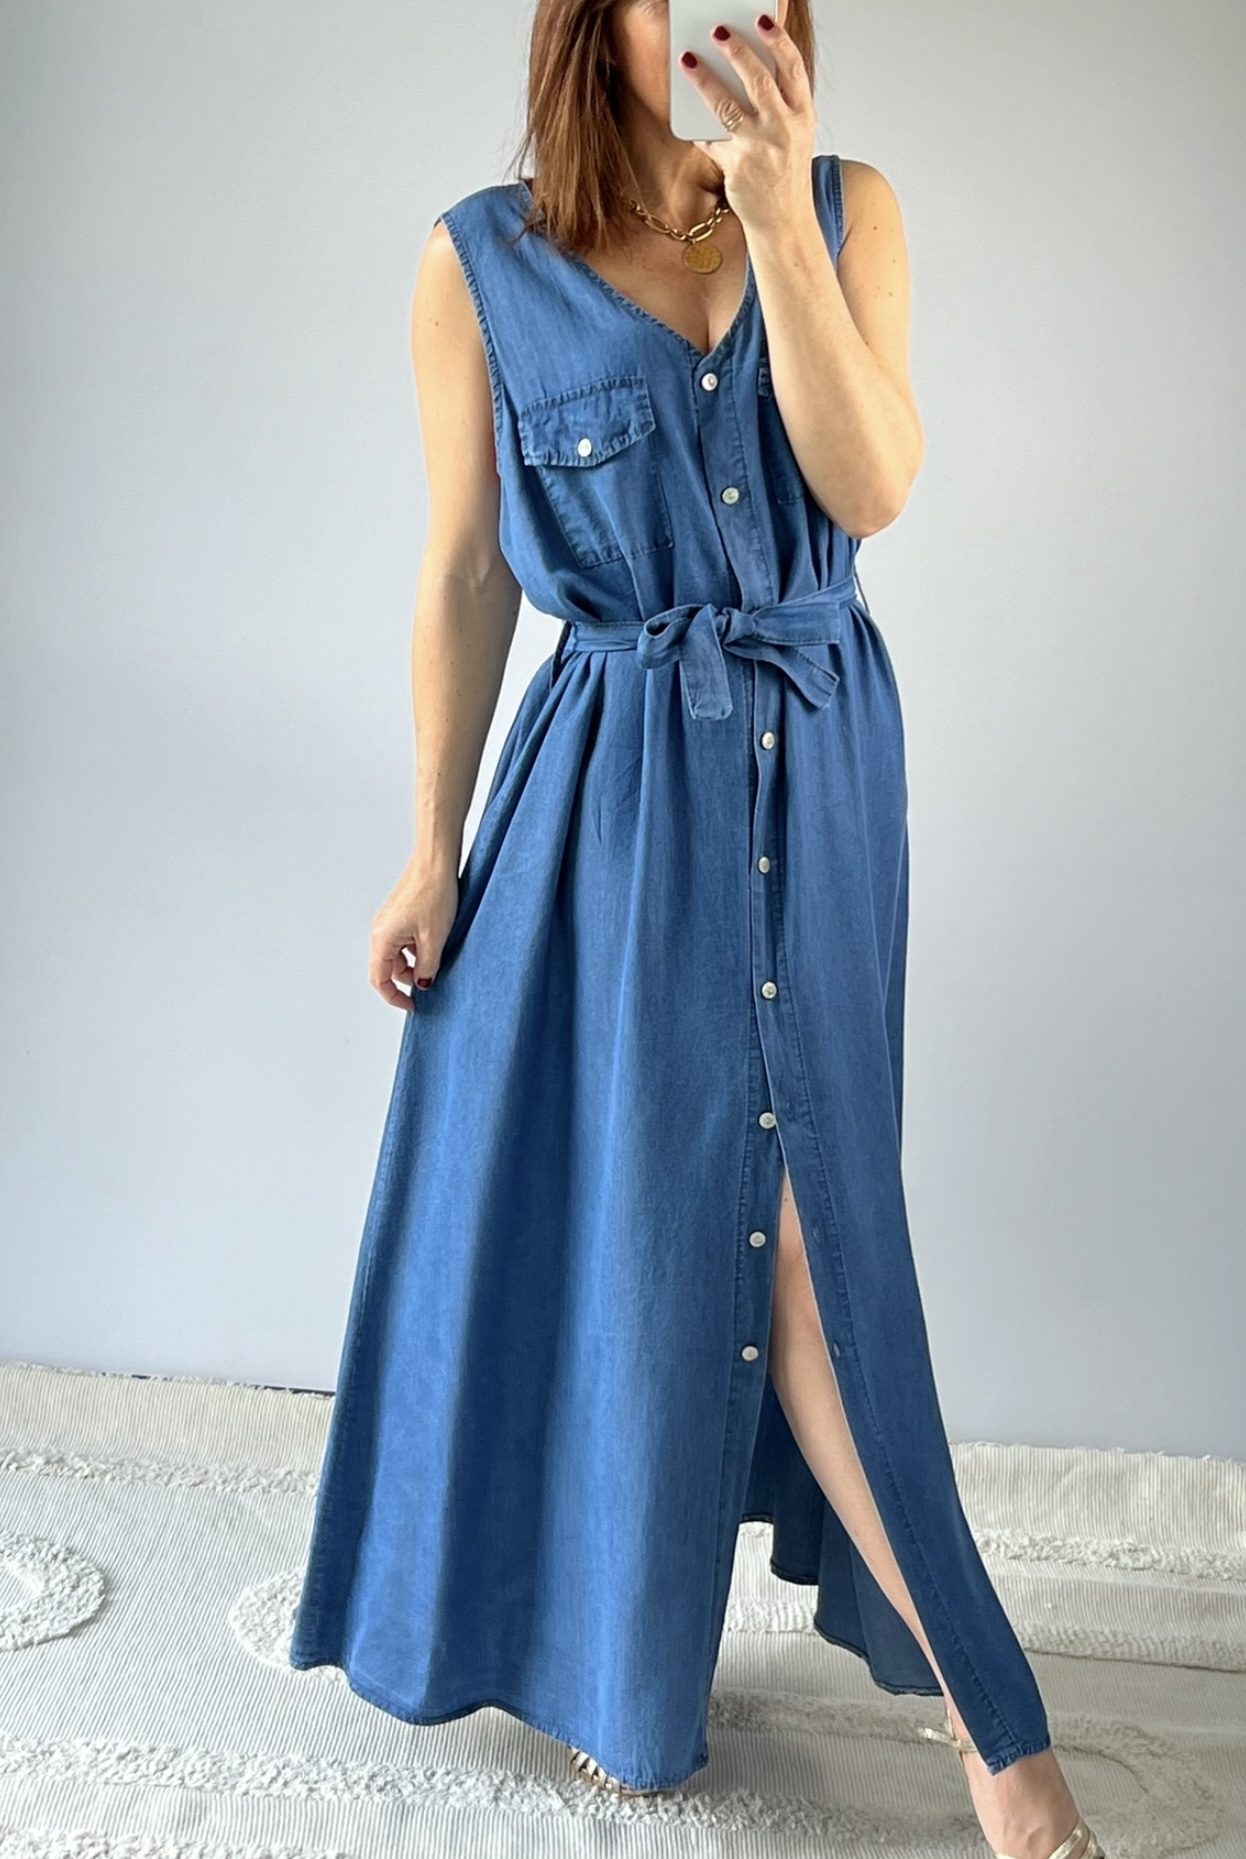 la robe solea bleu jean -1